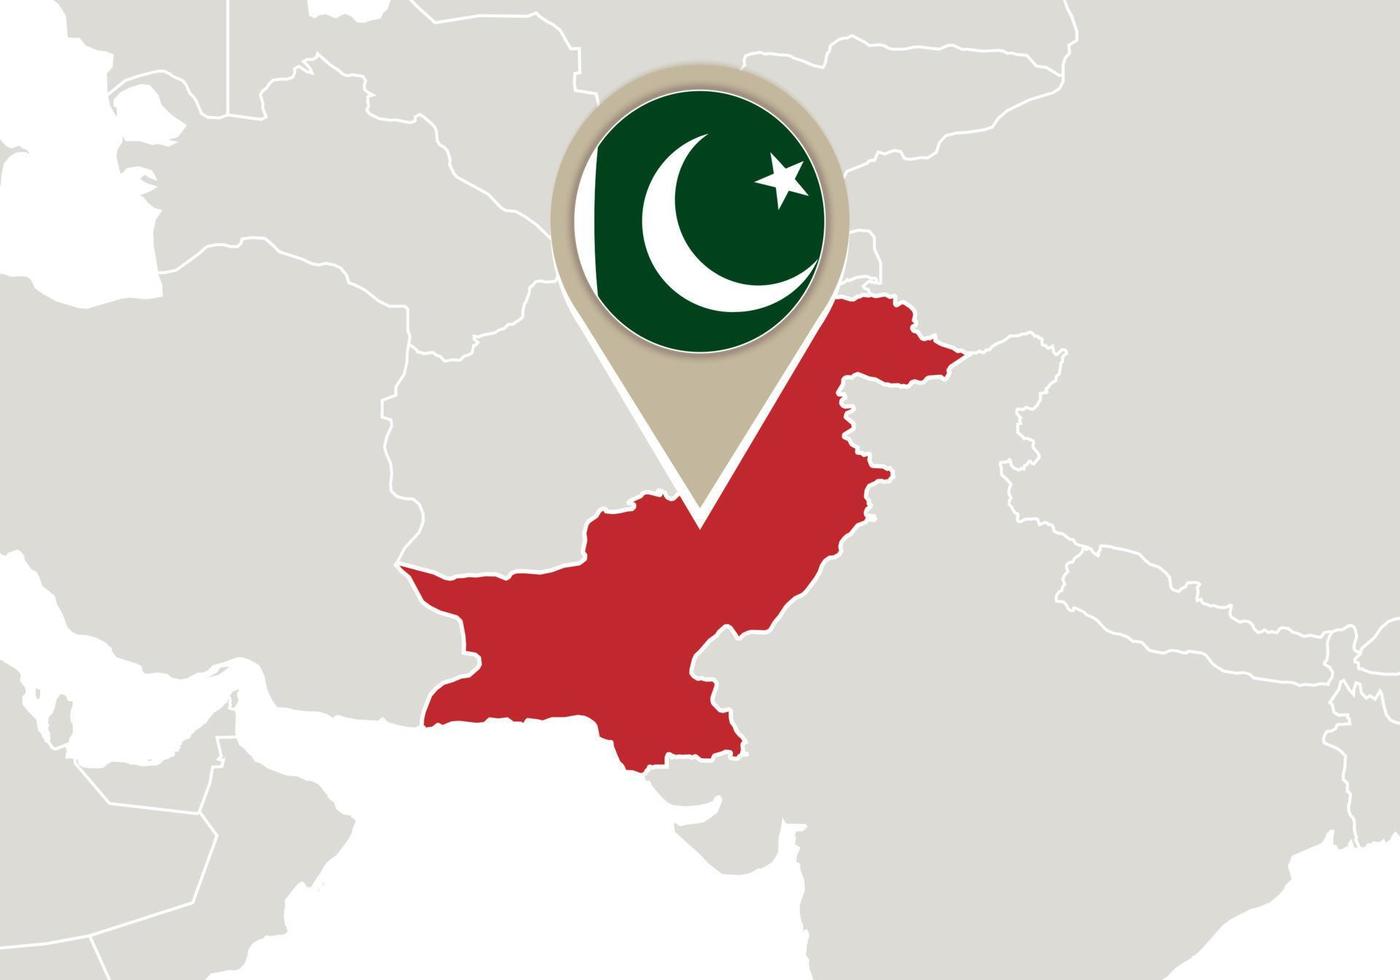 Pakistán en el mapa del mundo vector